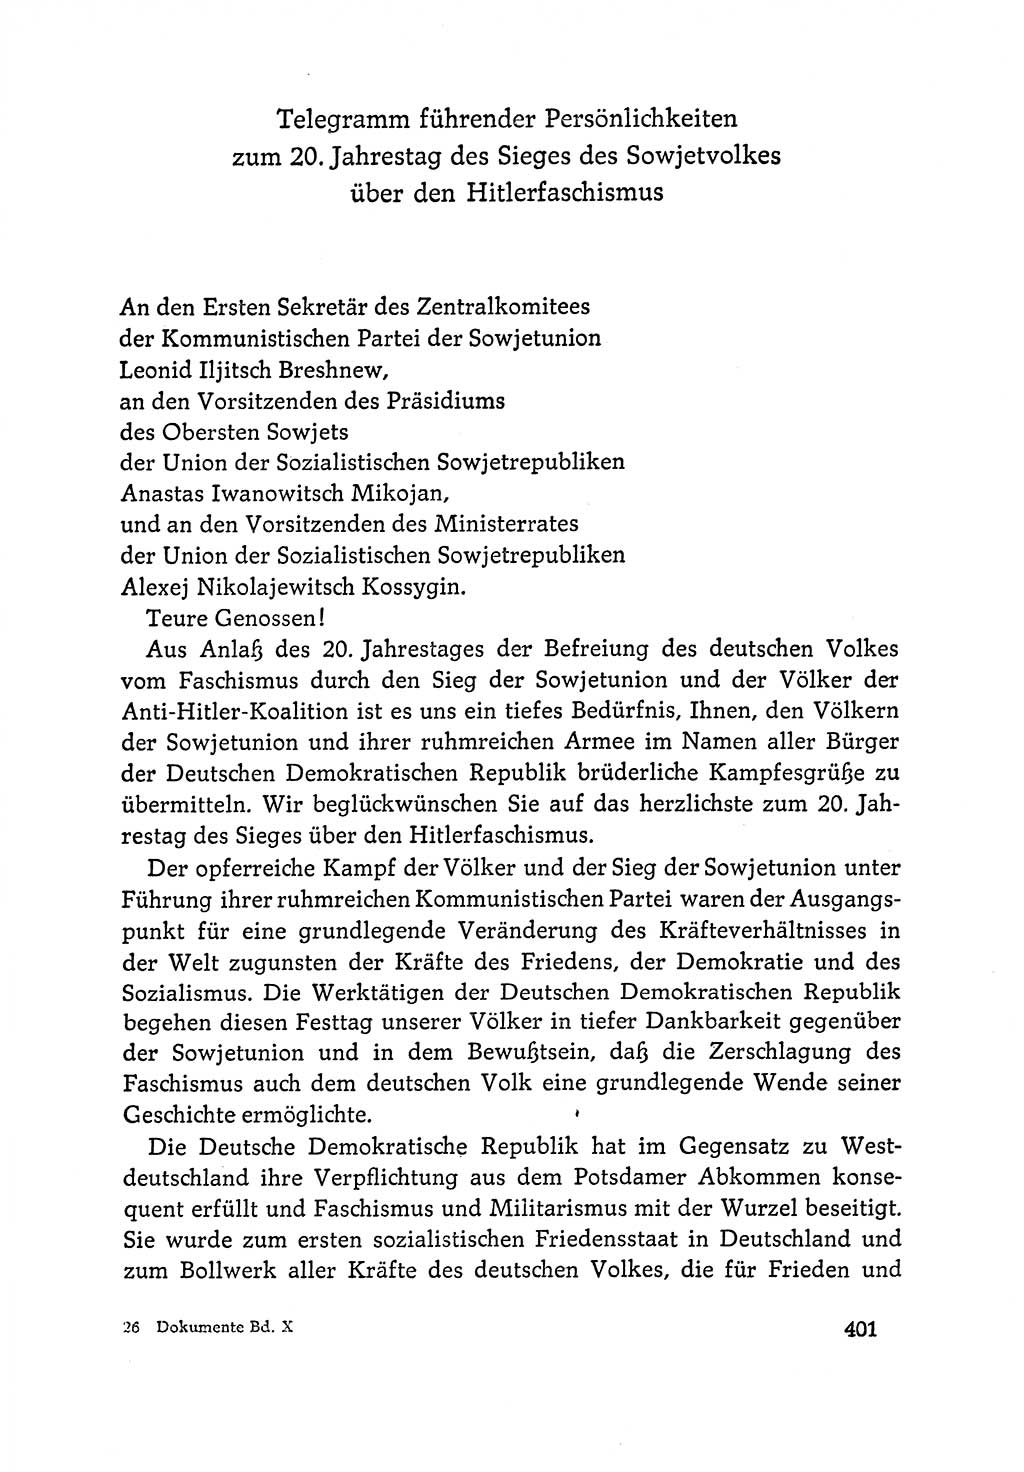 Dokumente der Sozialistischen Einheitspartei Deutschlands (SED) [Deutsche Demokratische Republik (DDR)] 1964-1965, Seite 401 (Dok. SED DDR 1964-1965, S. 401)